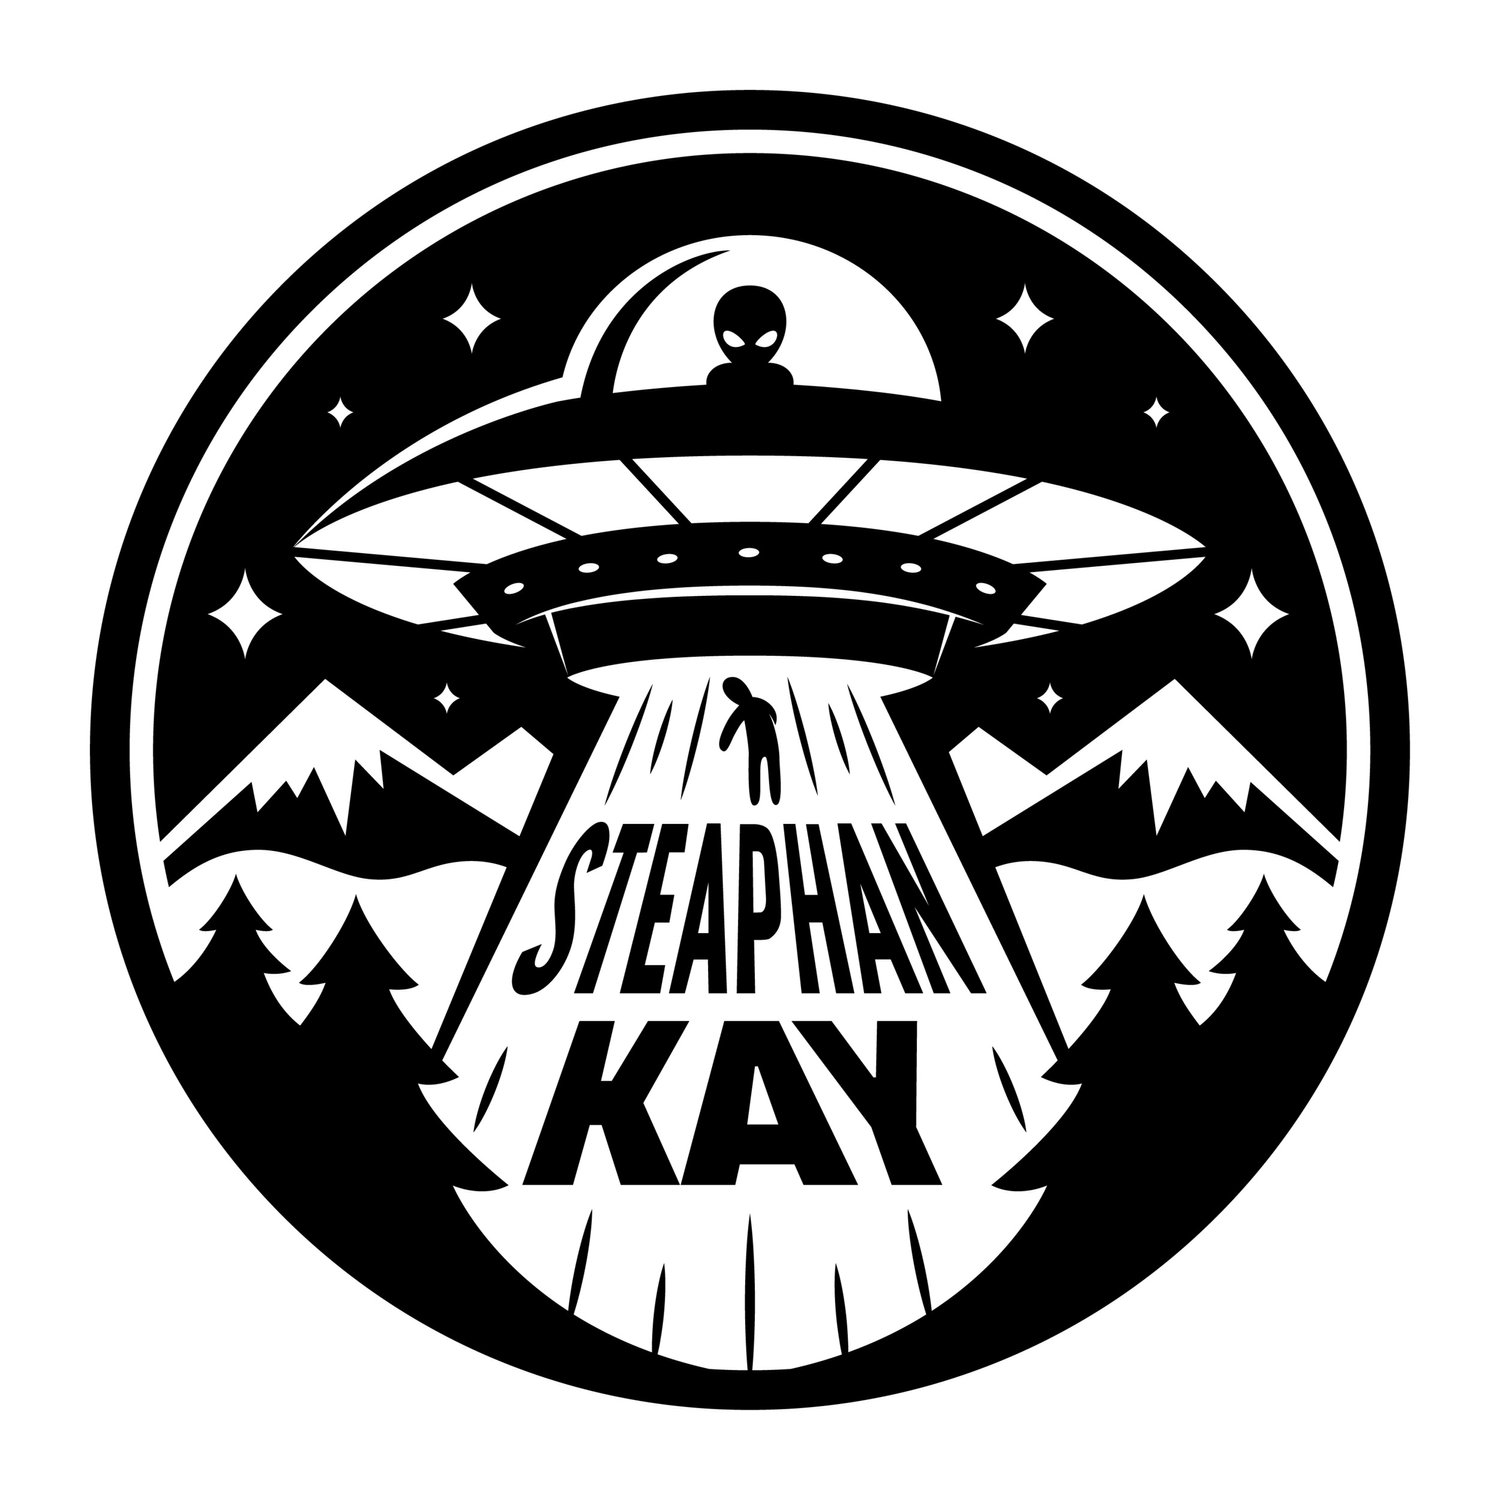 Author Steaphan Kay